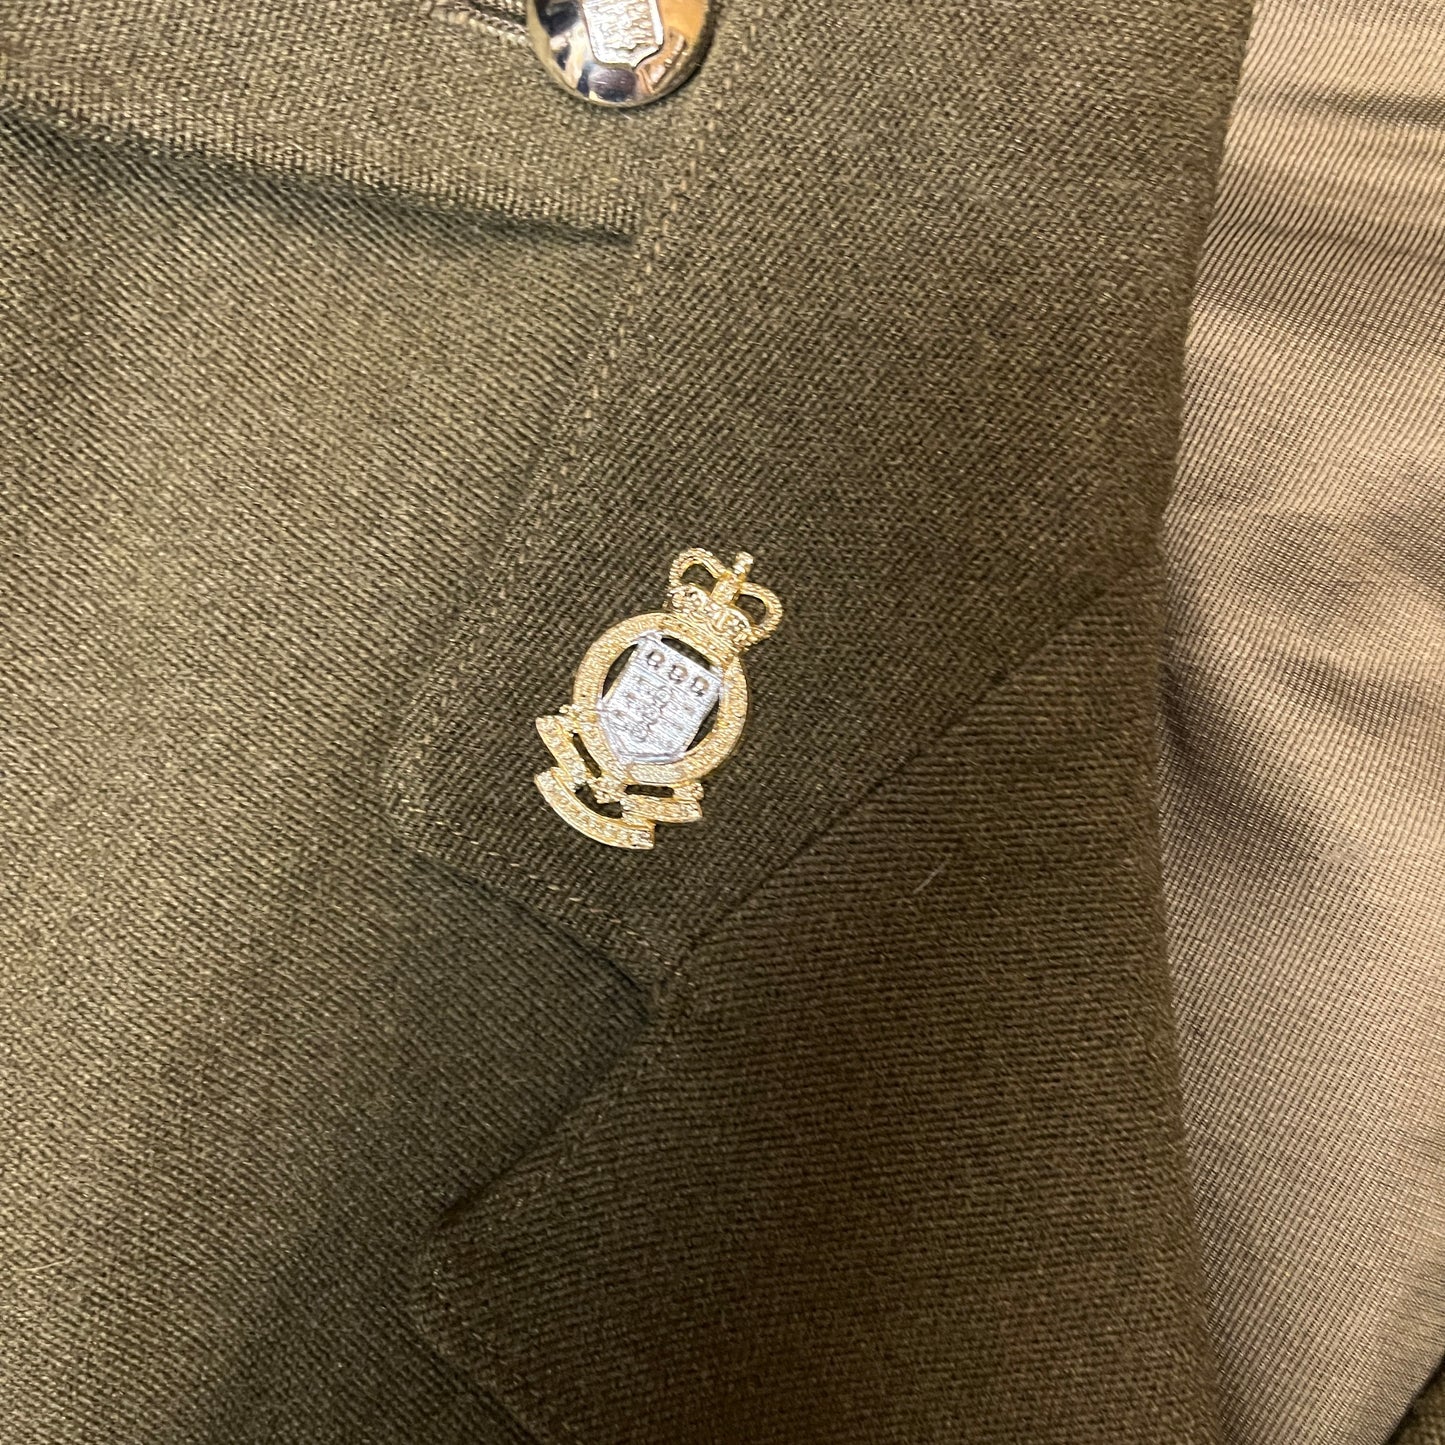 British Army 1964 Pattern Dress Jacket